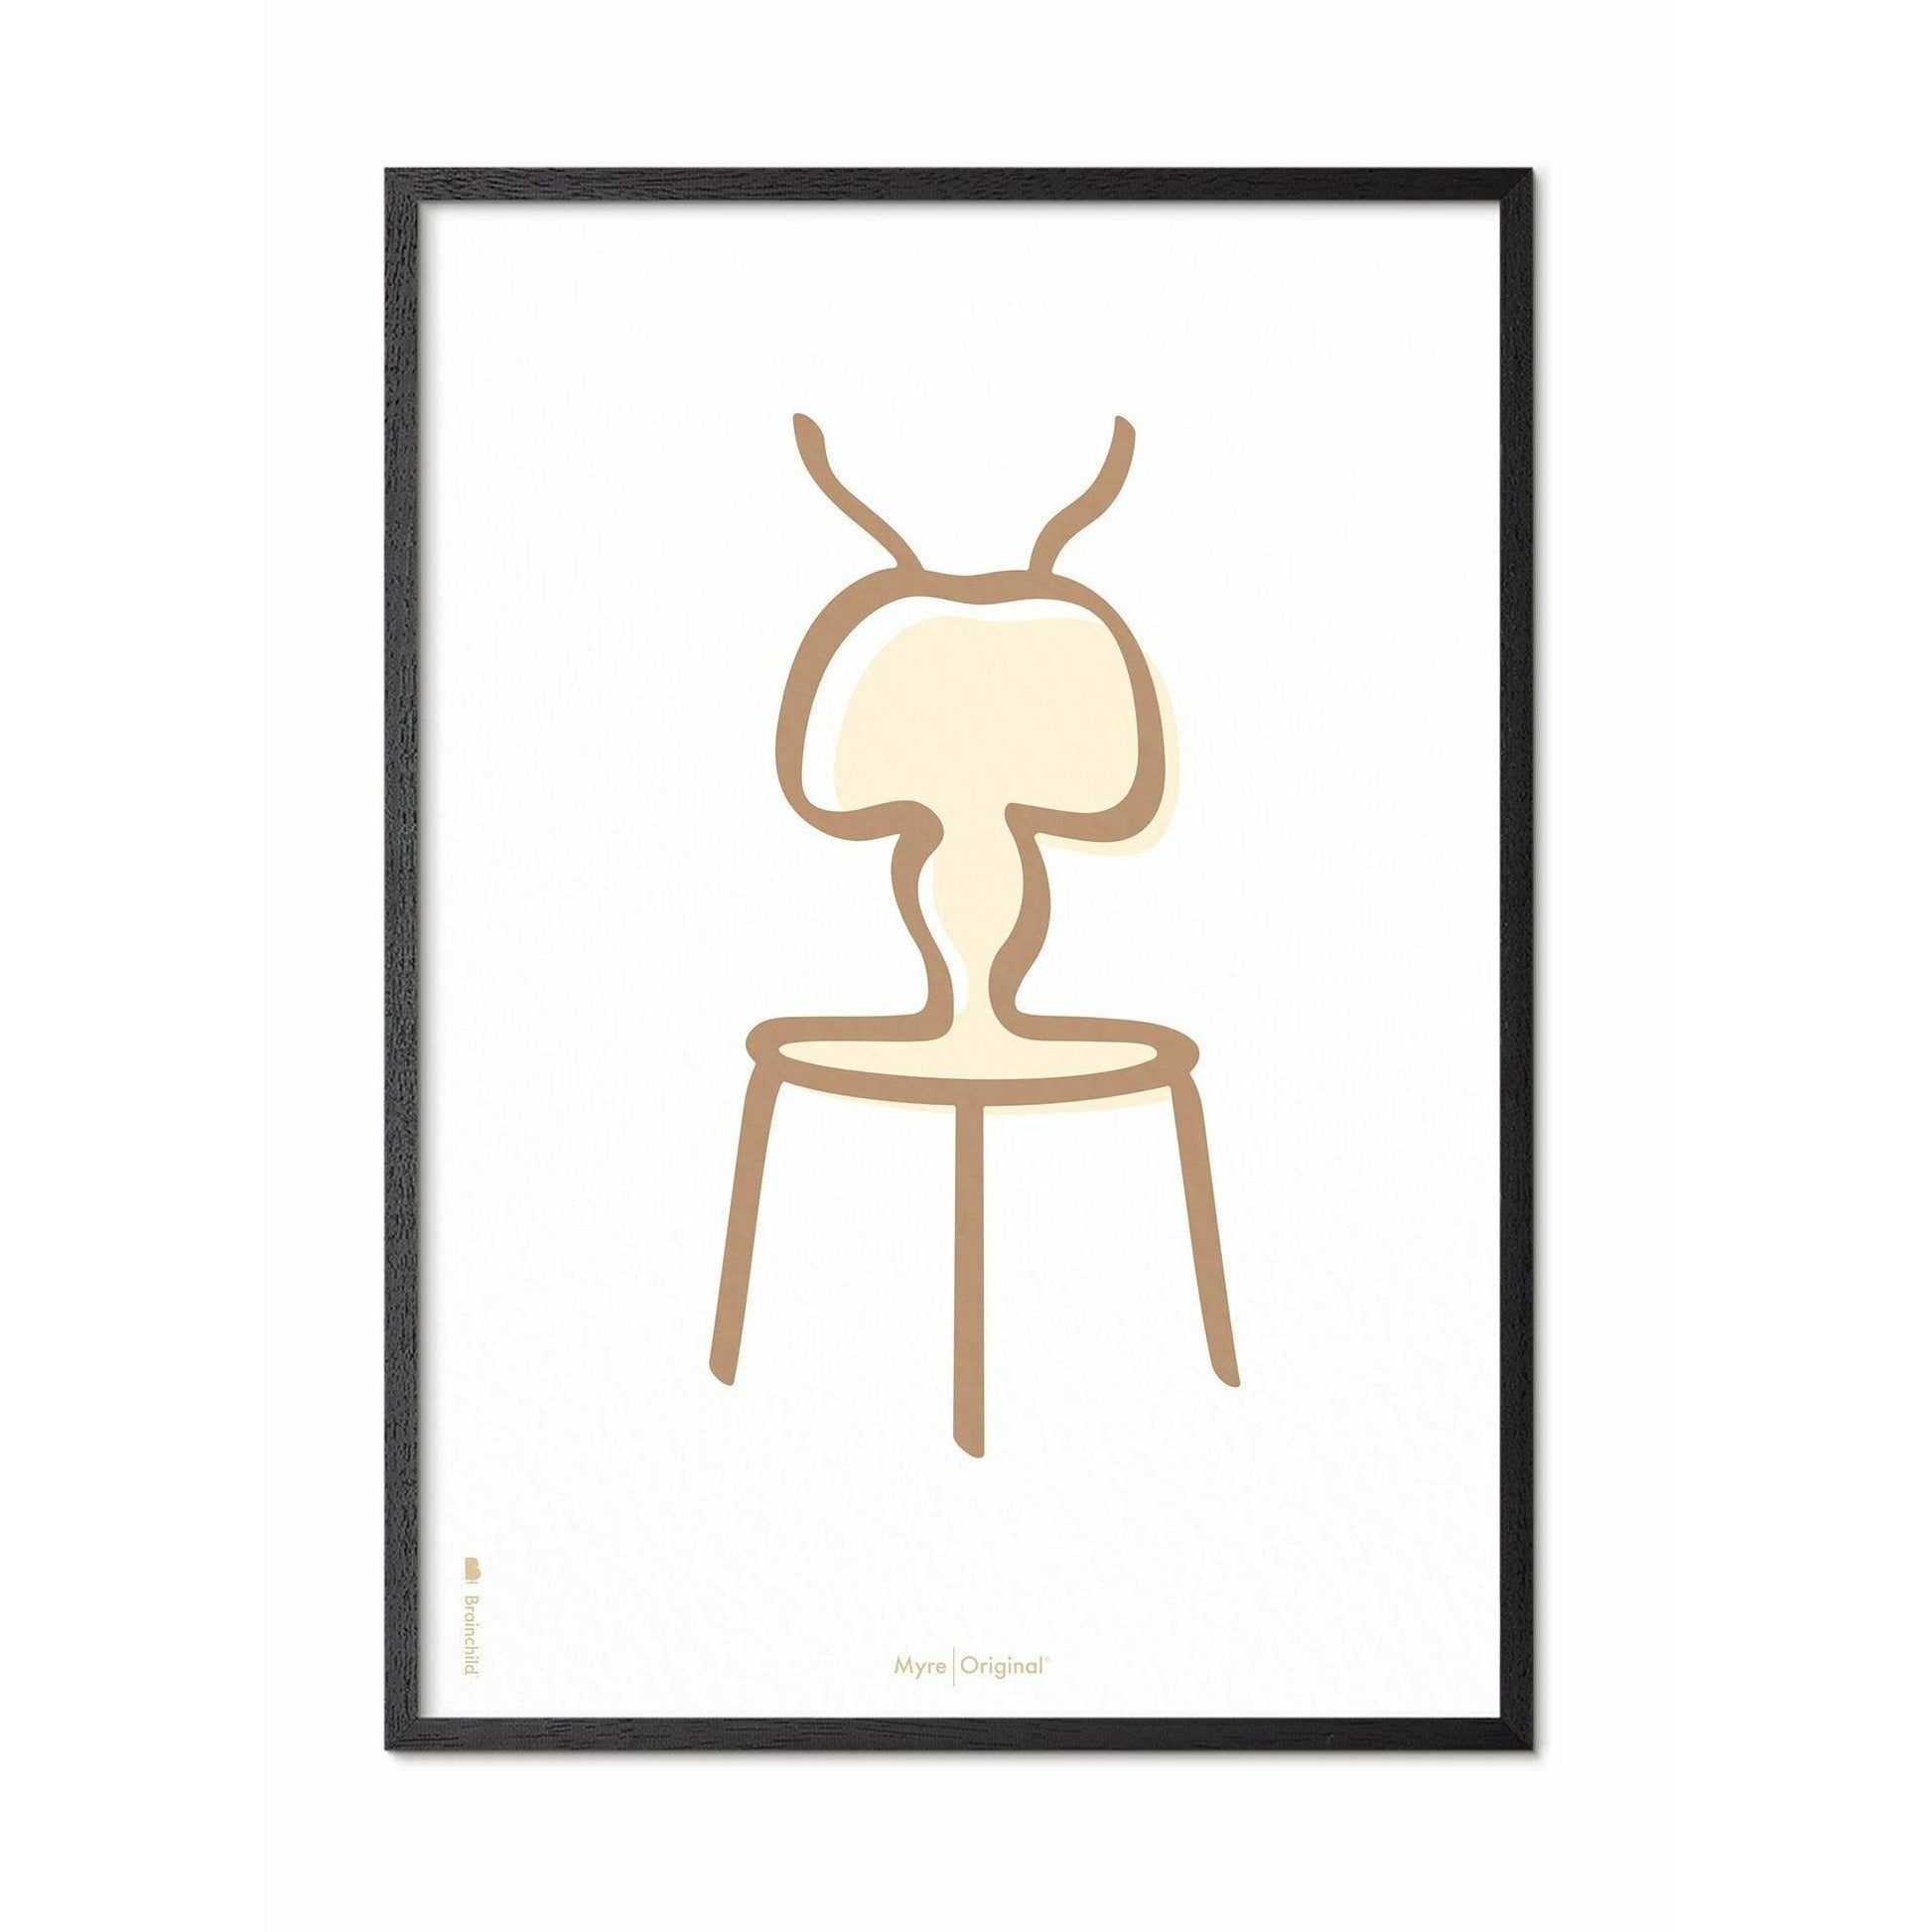 Pomysły plakat linii mrówek, rama w czarnym lakierowanym drewnie 30x40 cm, białe tło